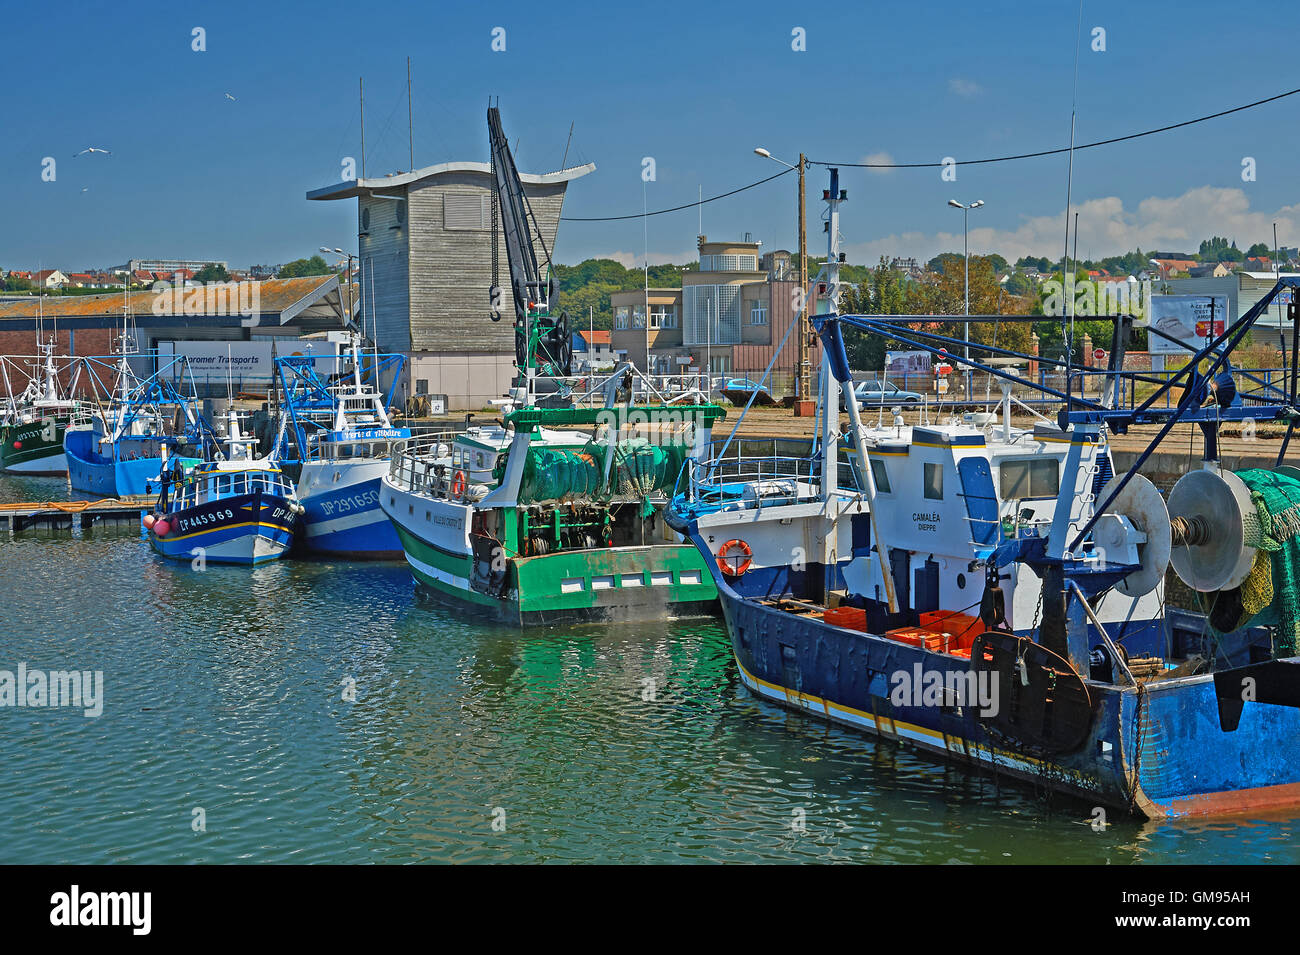 Port de Peche, puerto pesquero en Dieppe Foto de stock